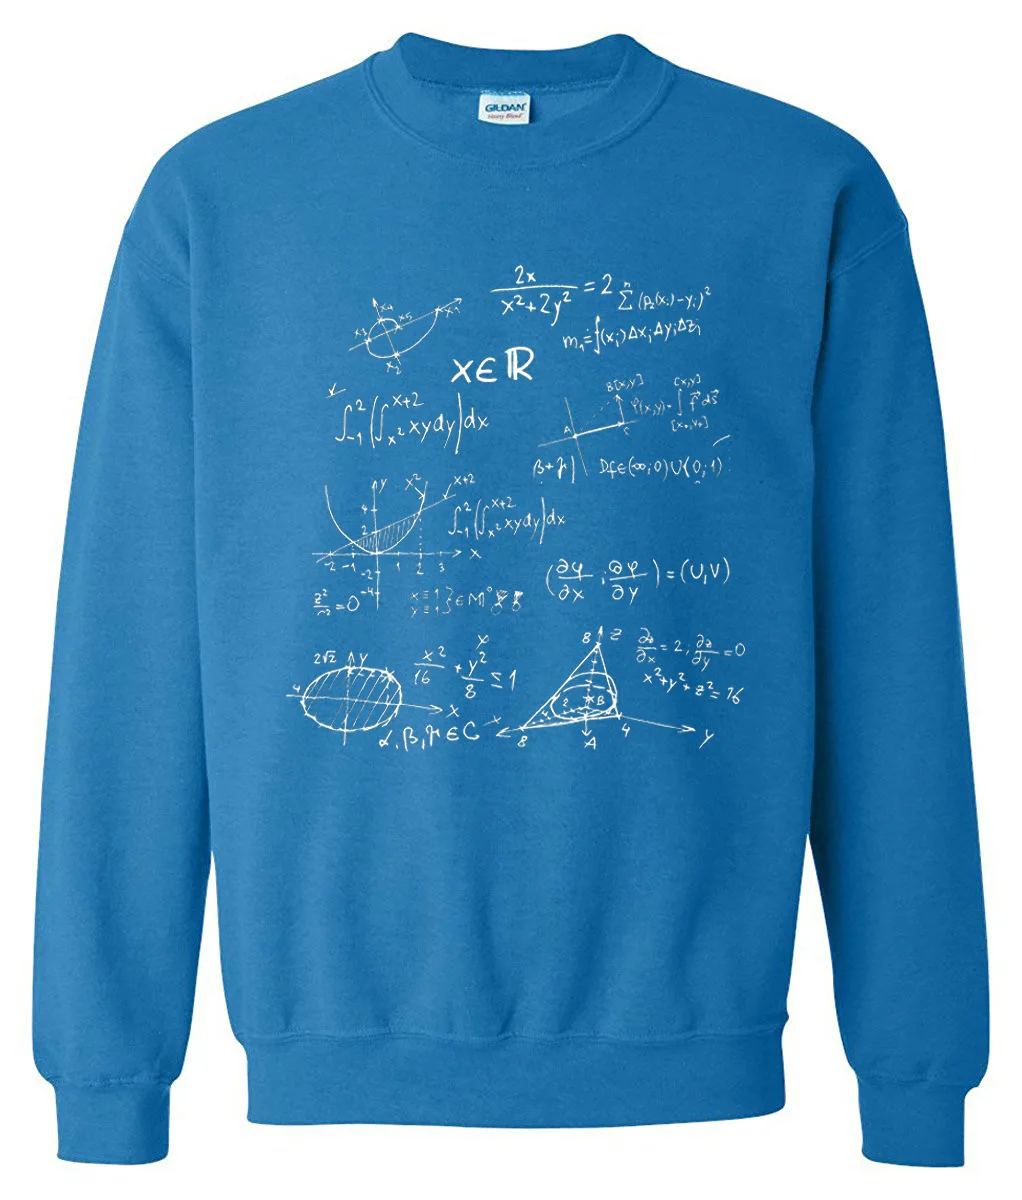 Мужская спортивная одежда с математической формулой, зимняя Весенняя флисовая толстовка с капюшоном The Big Bang Theory, Повседневная Толстовка, худи для мужчин - Цвет: blue